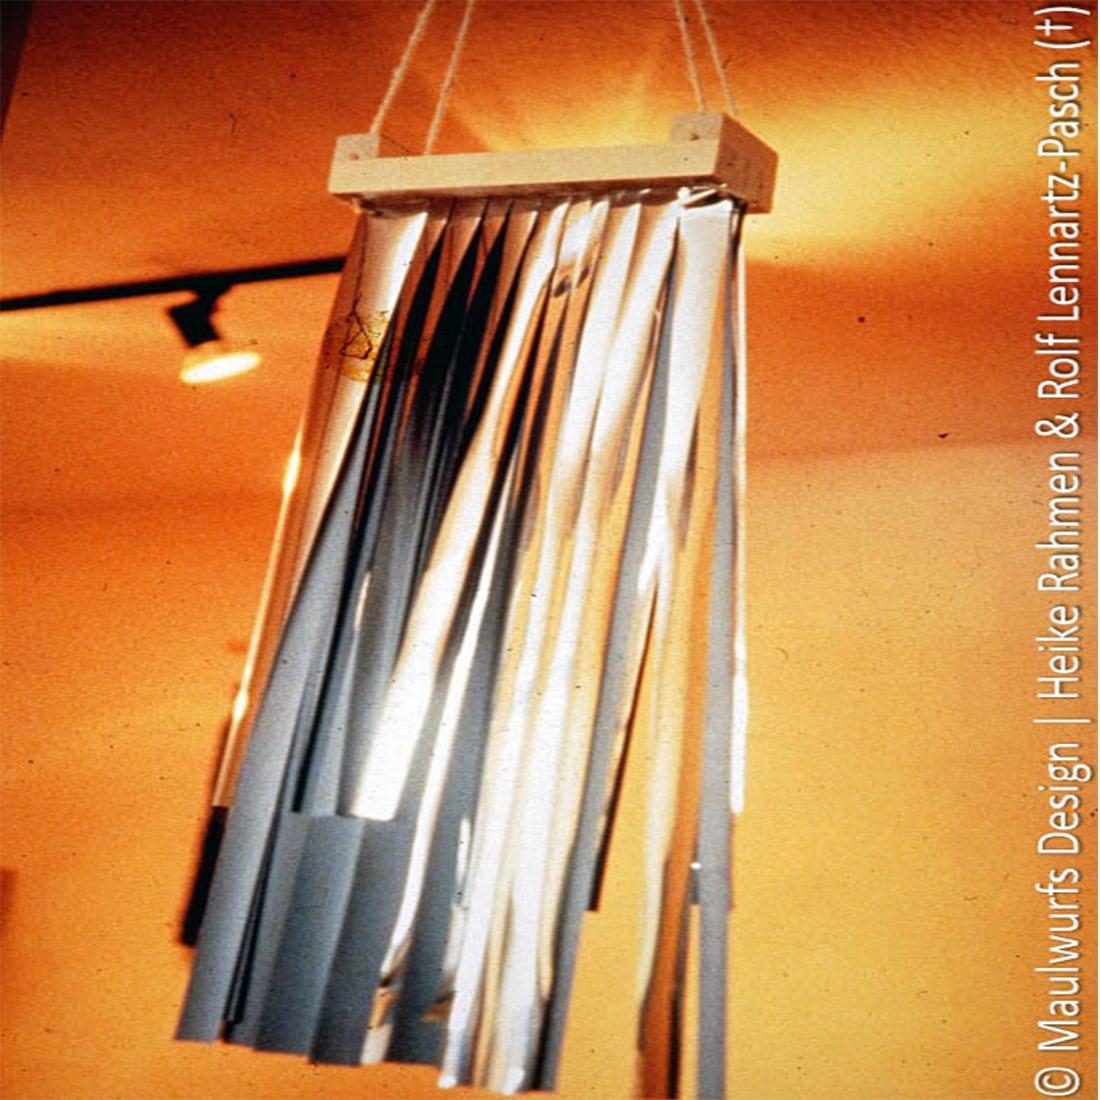 Eine Sammlung silberner Metallstäbe hängt vertikal an einem Holzrahmen vor einem orangefarbenen Hintergrund.